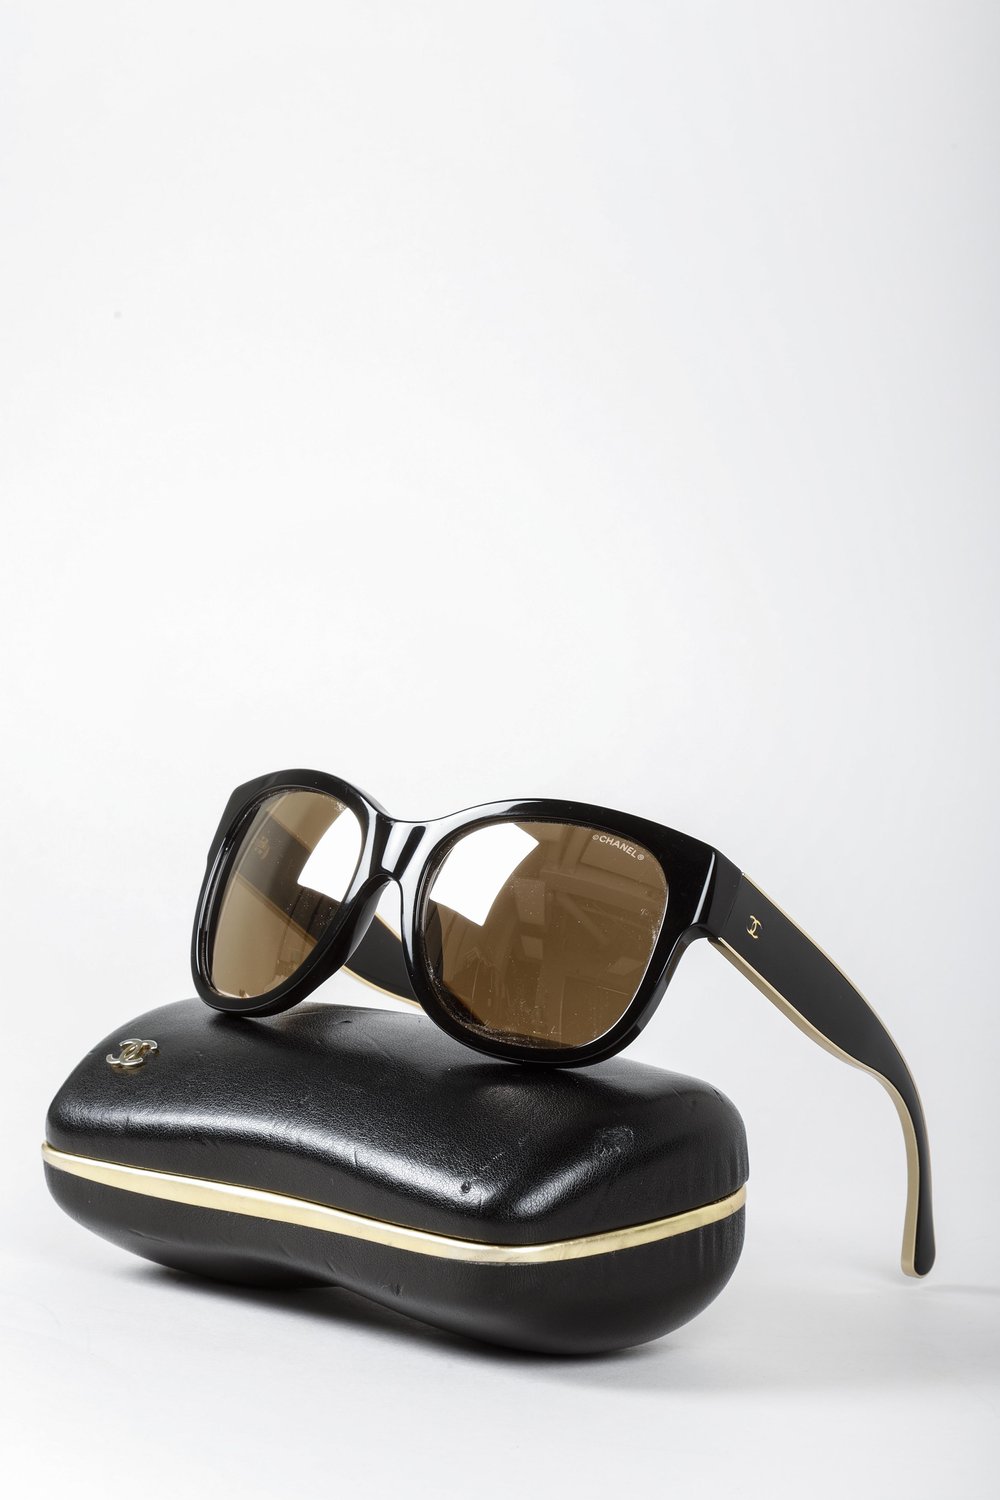 Chanel Gold Trim Sunglasses — BLOGGER ARMOIRE